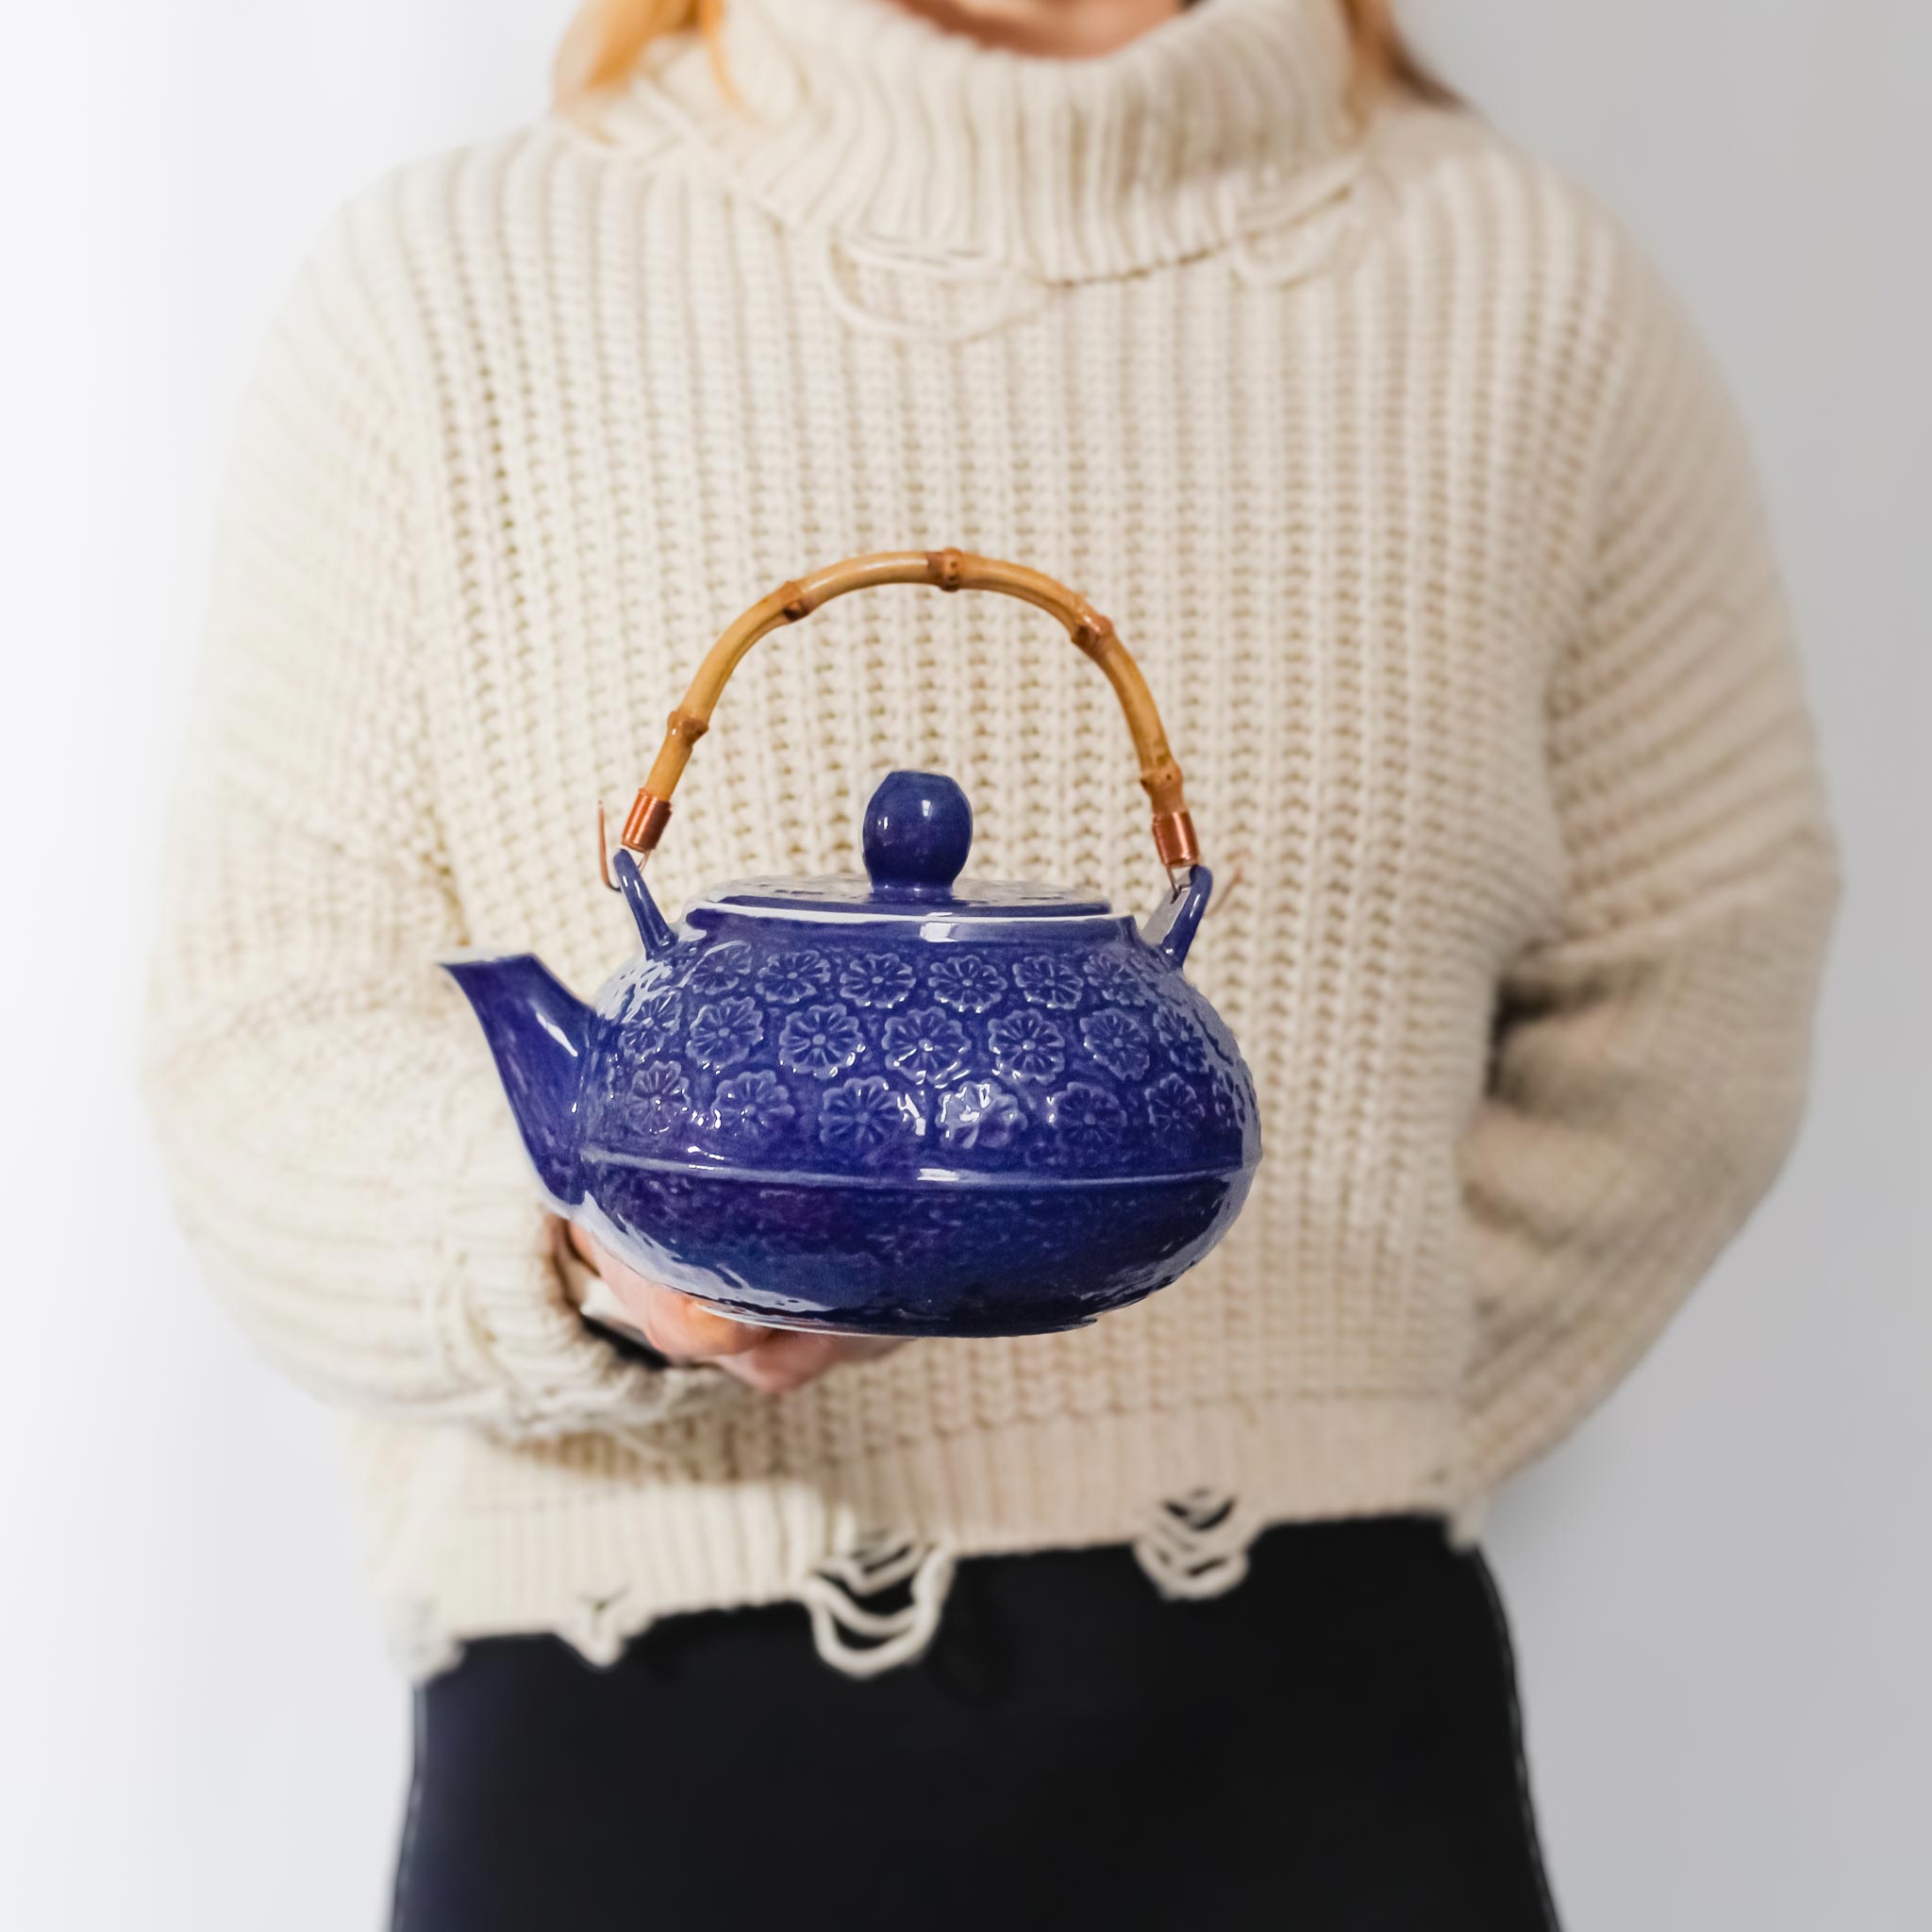 Loose Leaf Infuser Teapot